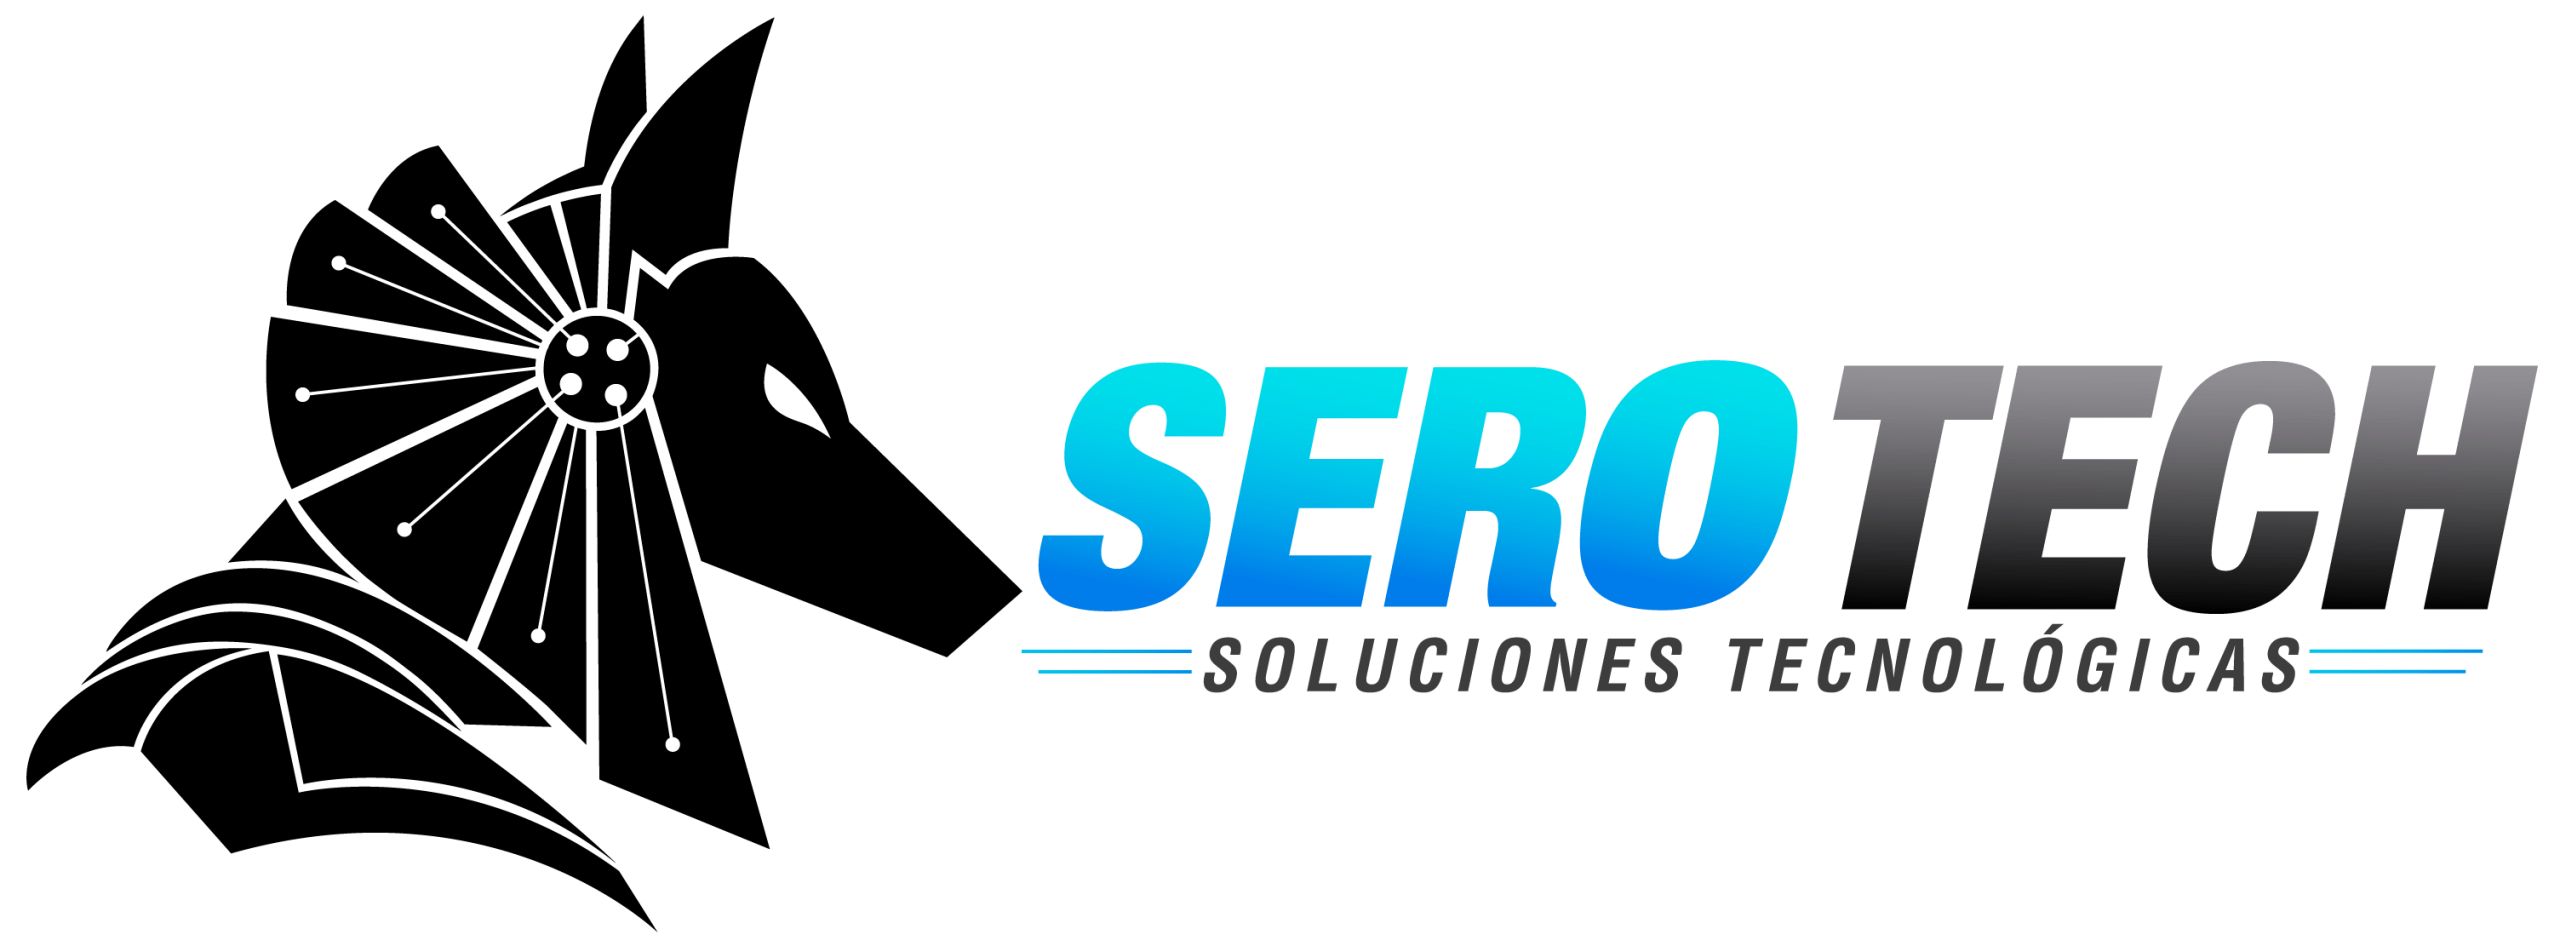 Logo color serotech